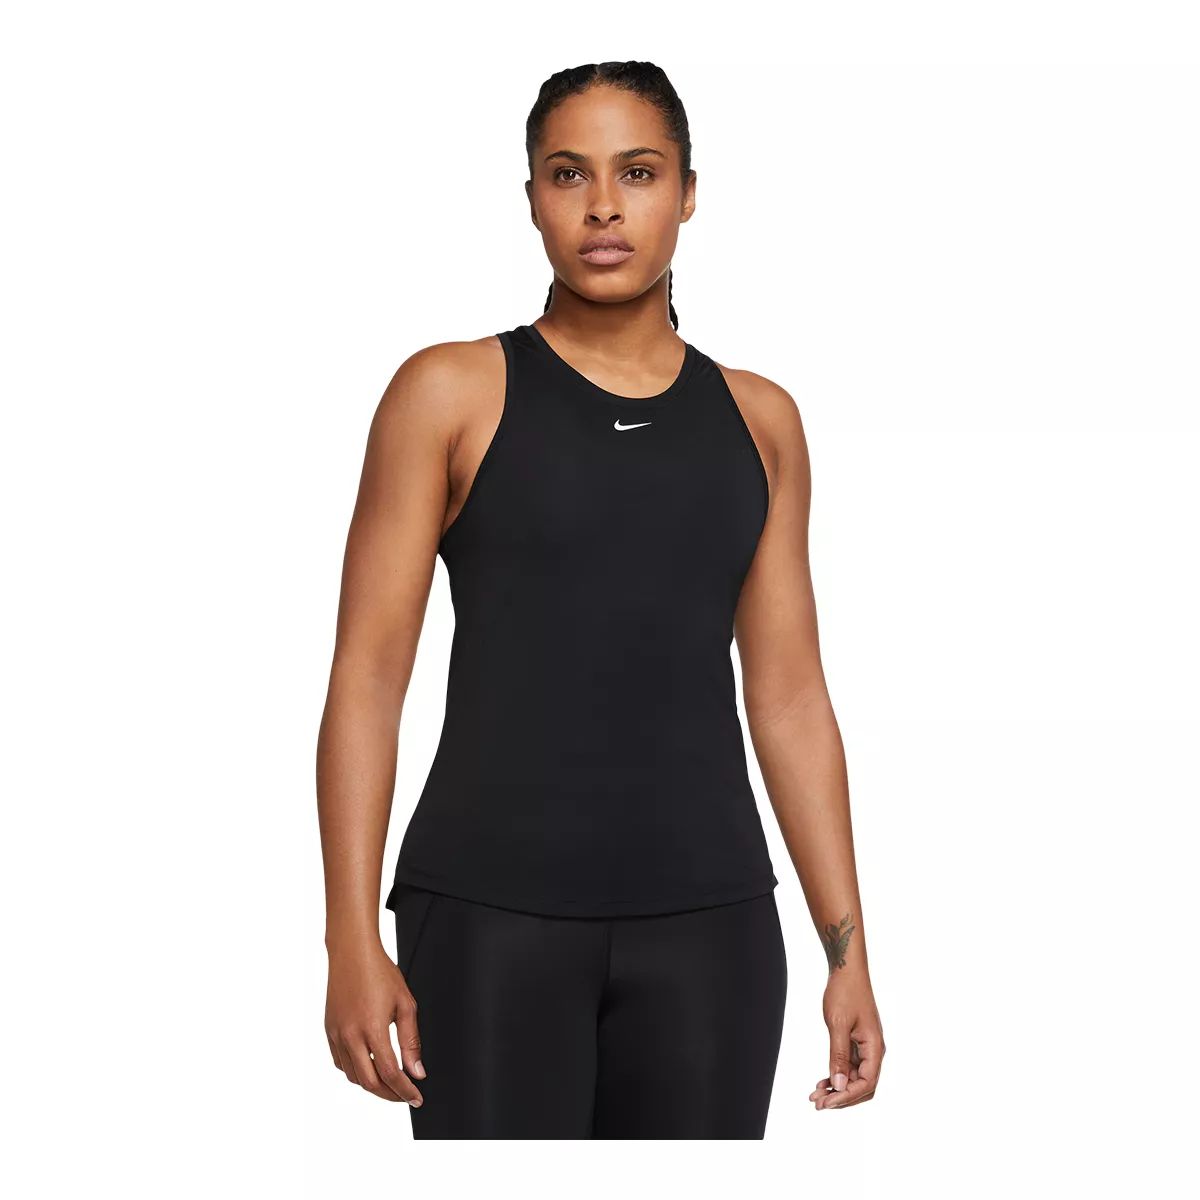 Nike Women's One Standard Tank Top  Standard Fit  Sleeveless  Dri-FIT  Sports